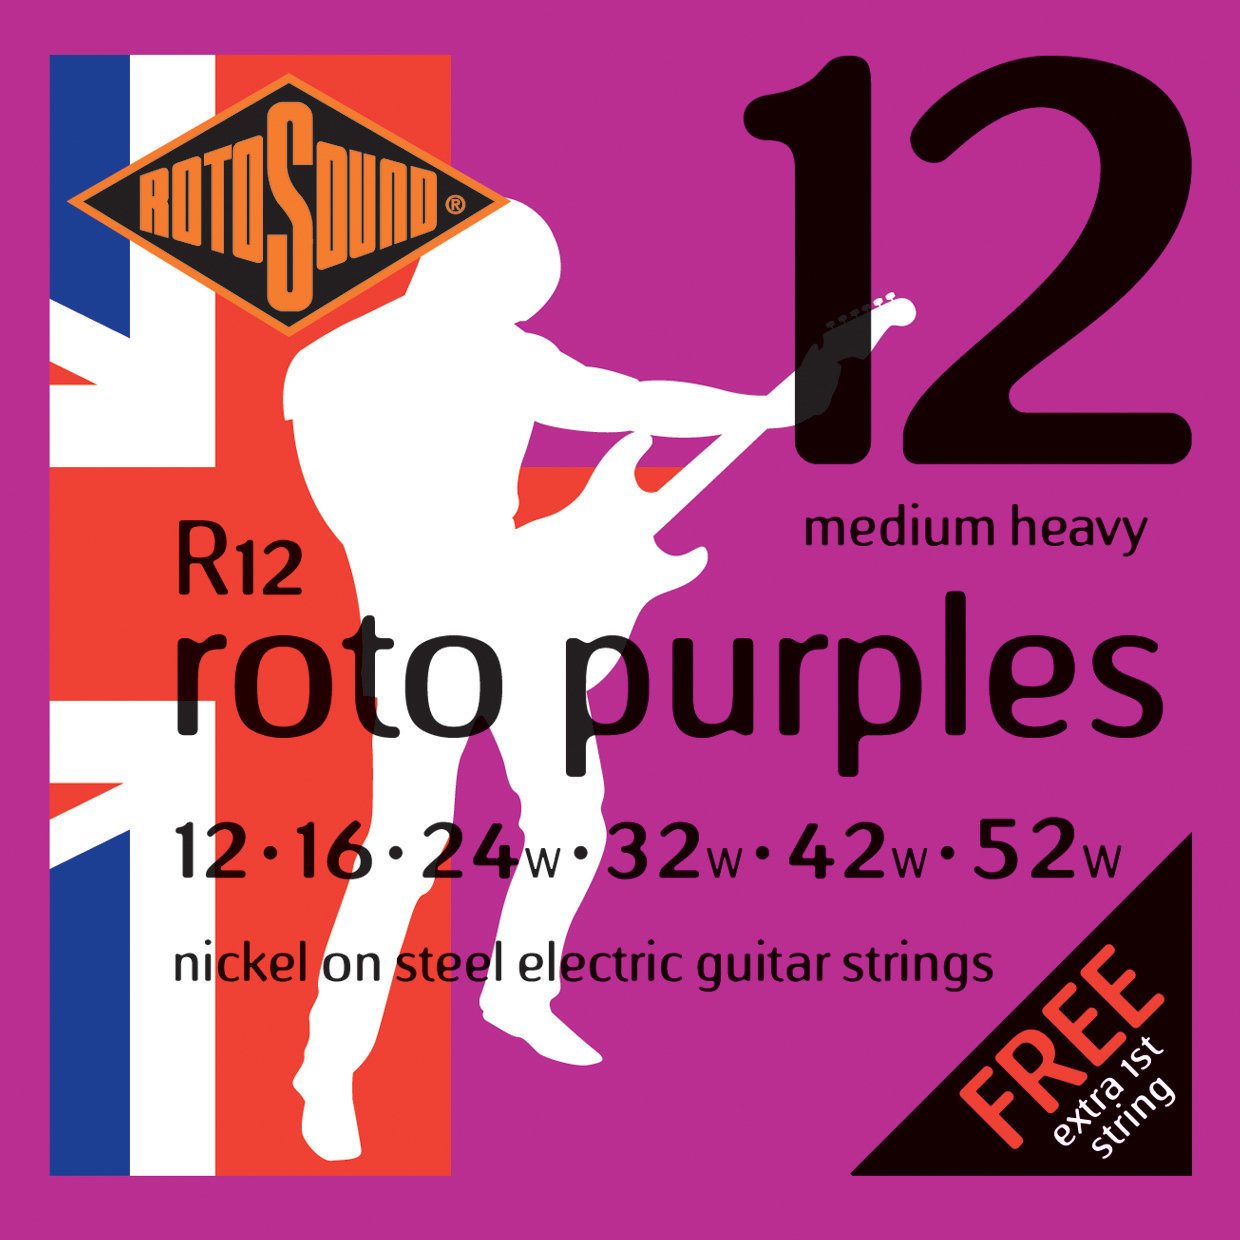 Struny pre elektrickú gitaru Rotosound R12